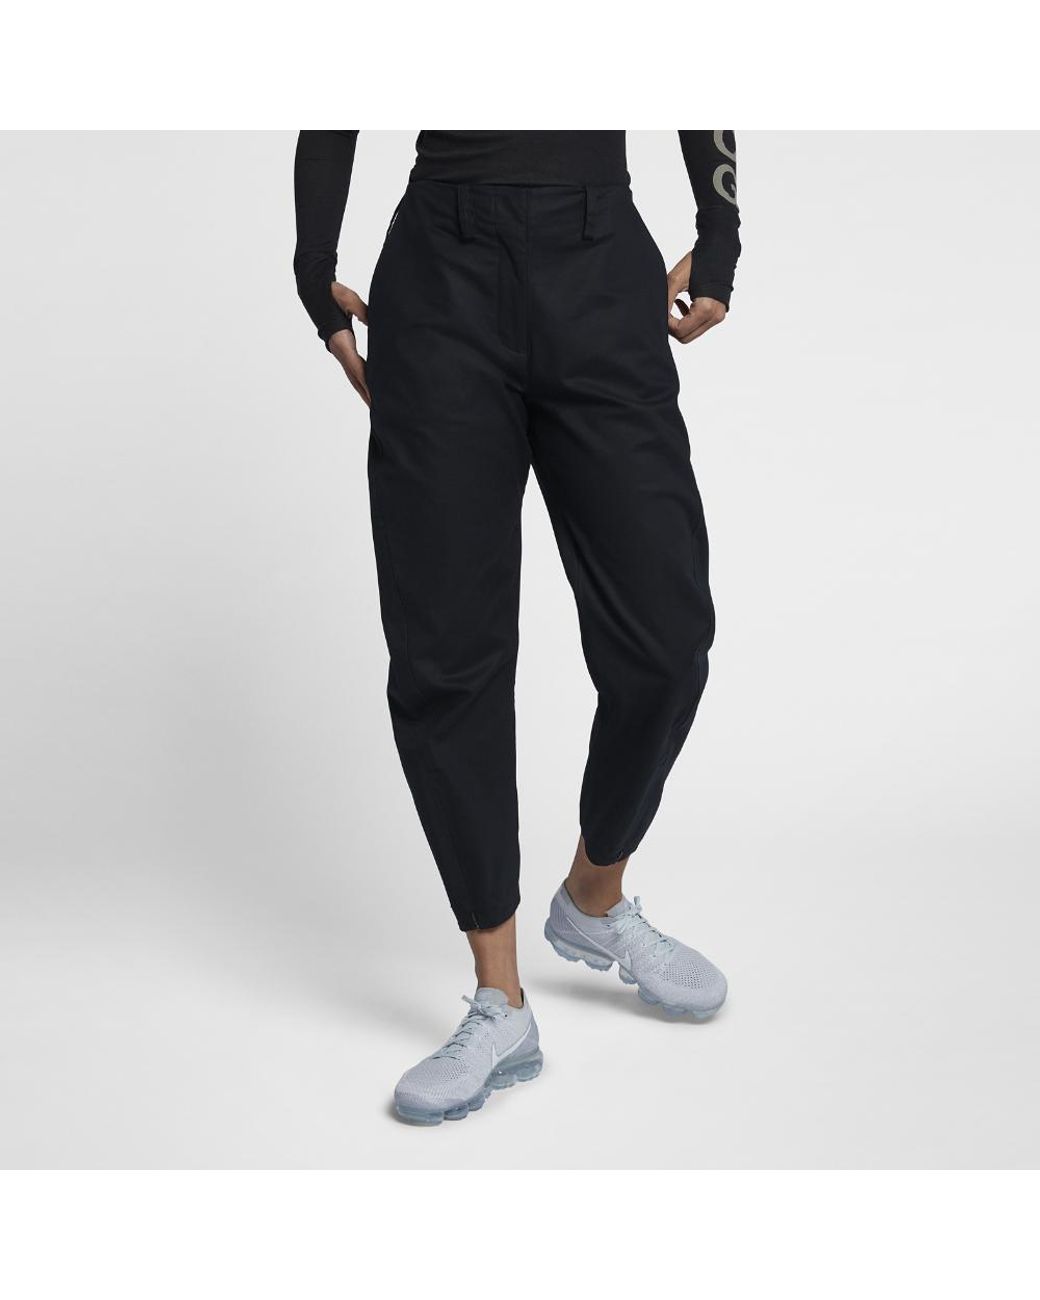 Nike Lab Acg Tech Woven Women's Pants in Black | Lyst